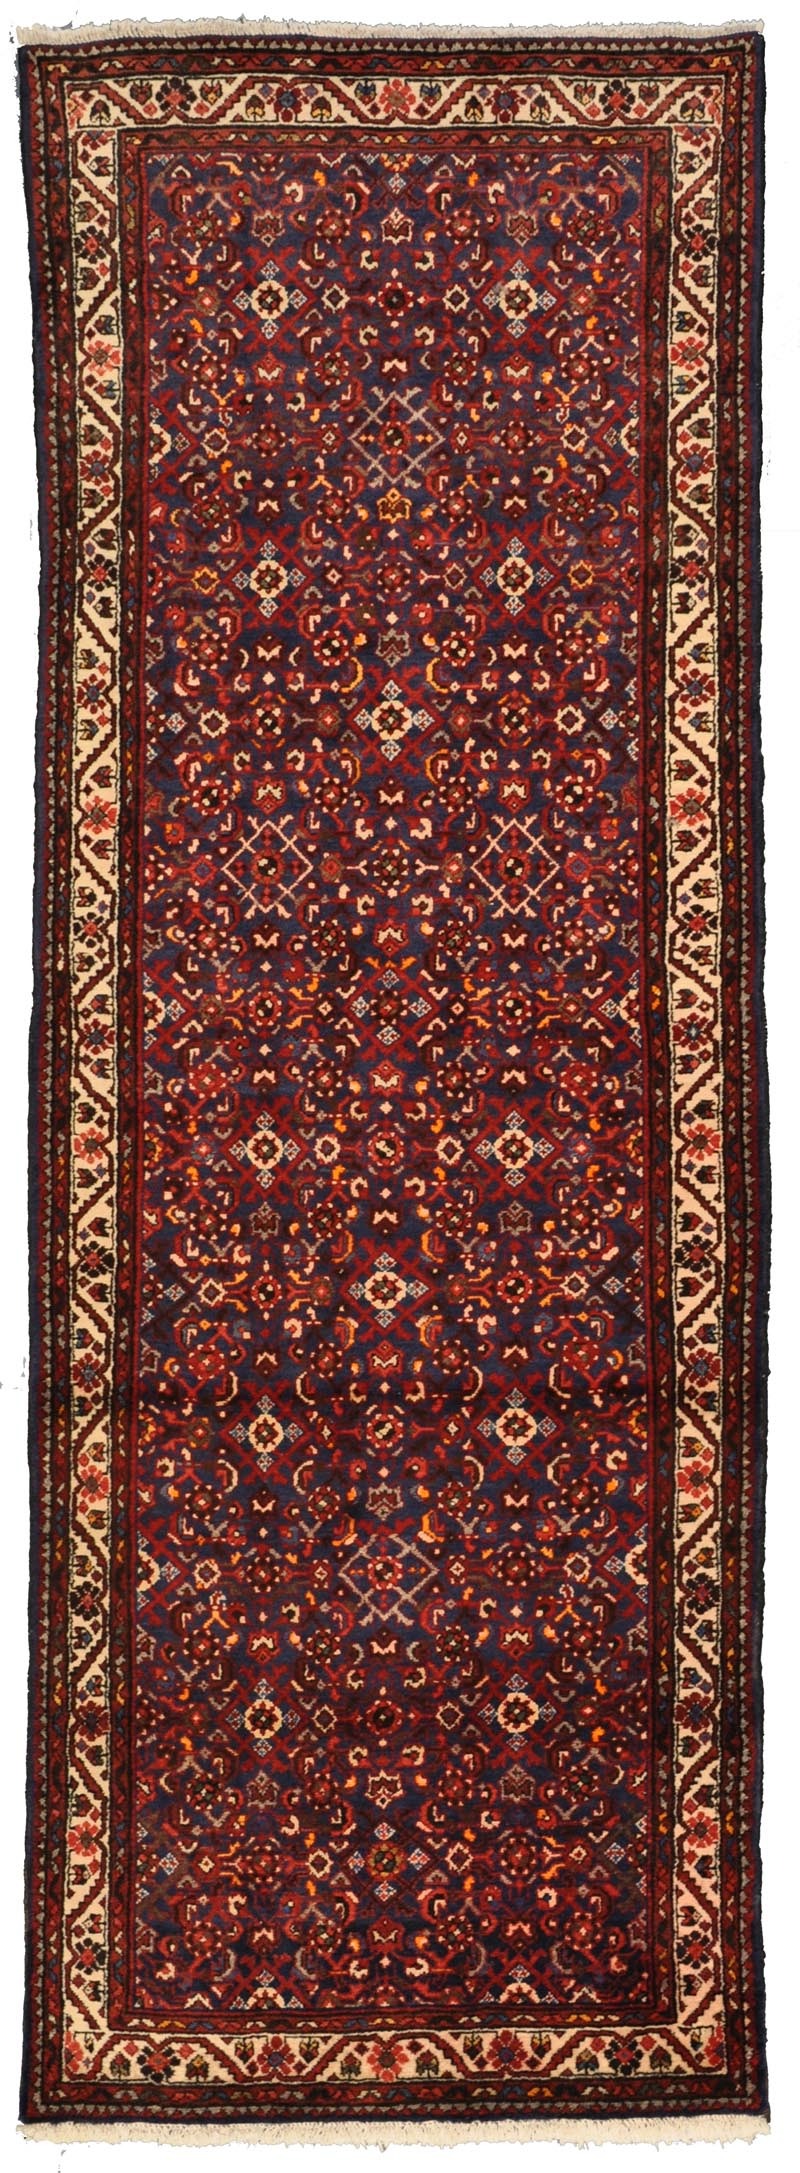 vintage persian rug online runner rug antique online rug store refined carpet rug antique carpet persian handmade rug orange county rug store